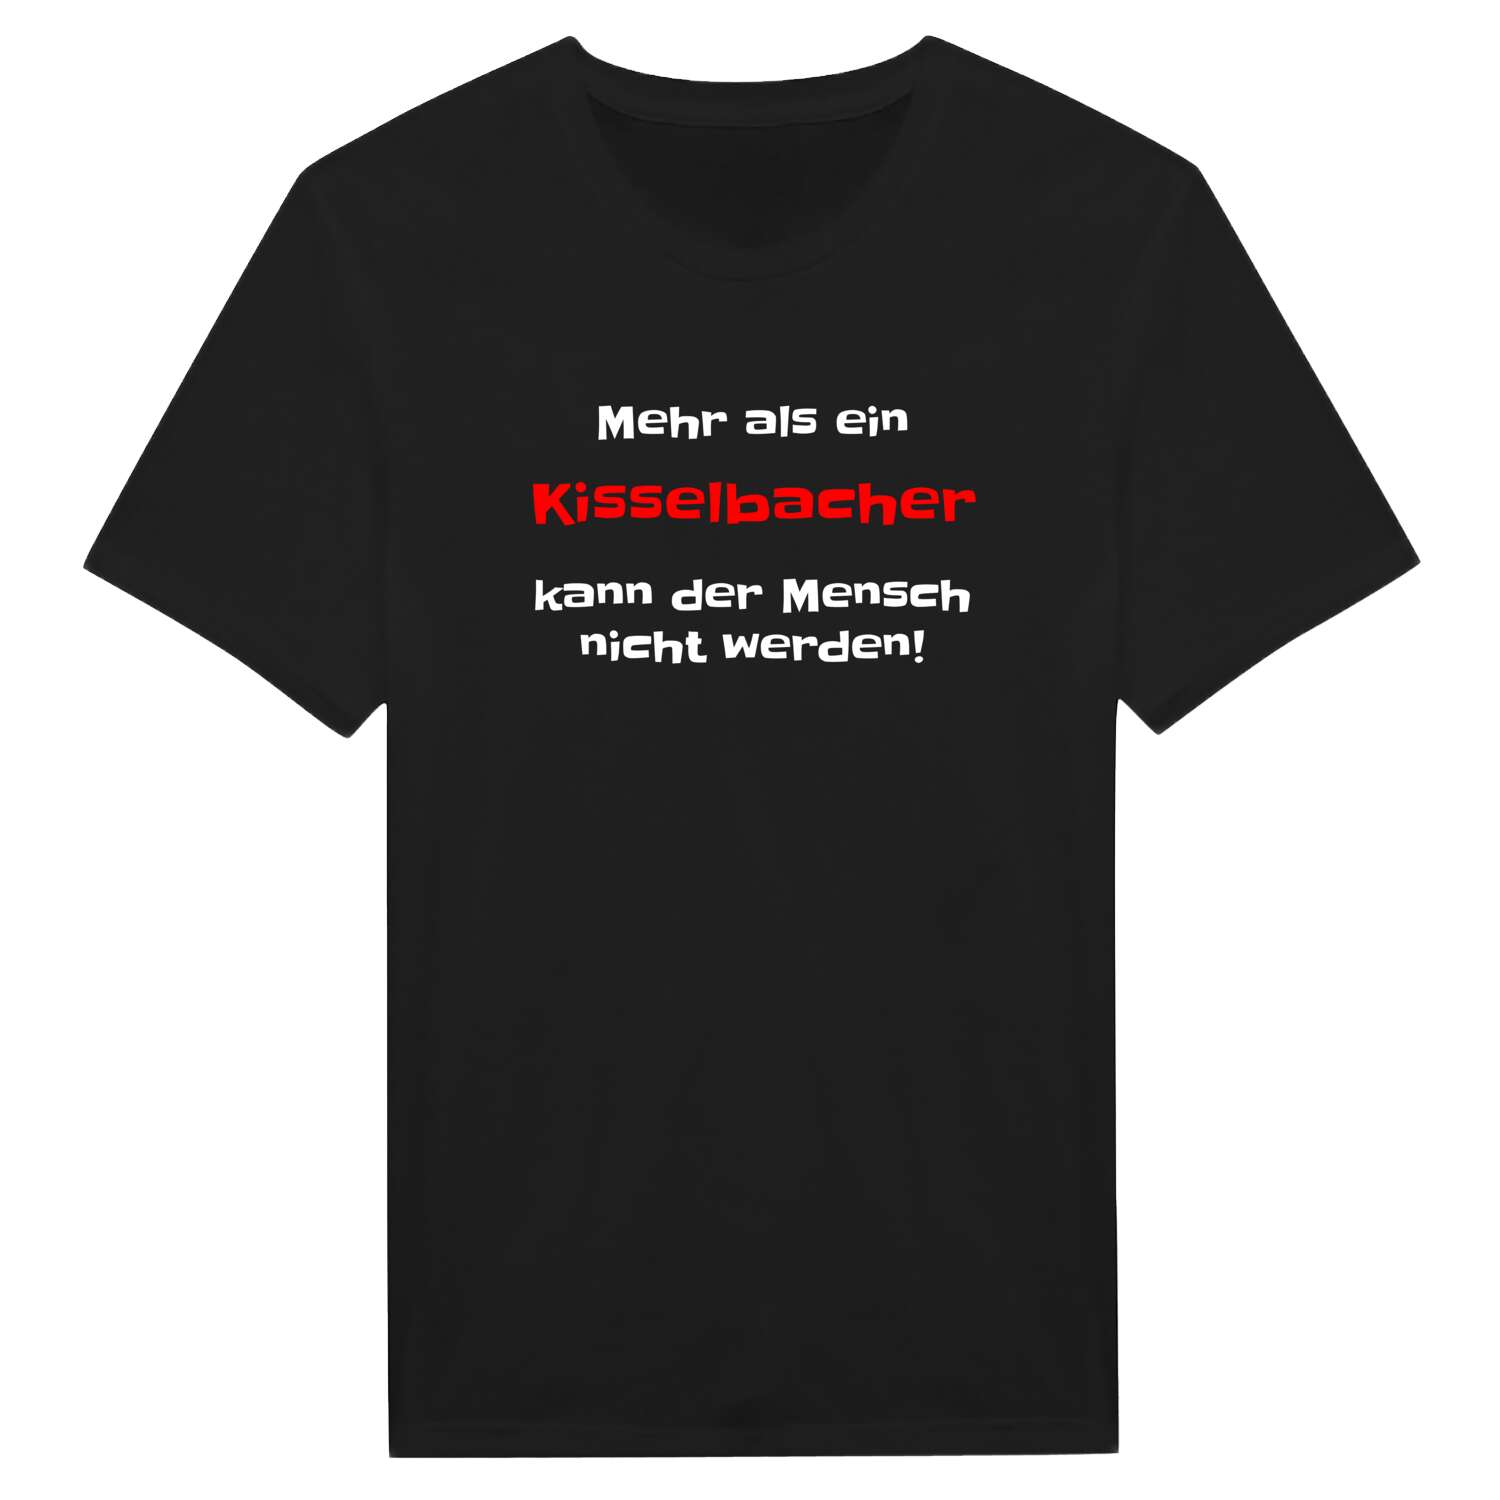 Kisselbach T-Shirt »Mehr als ein«